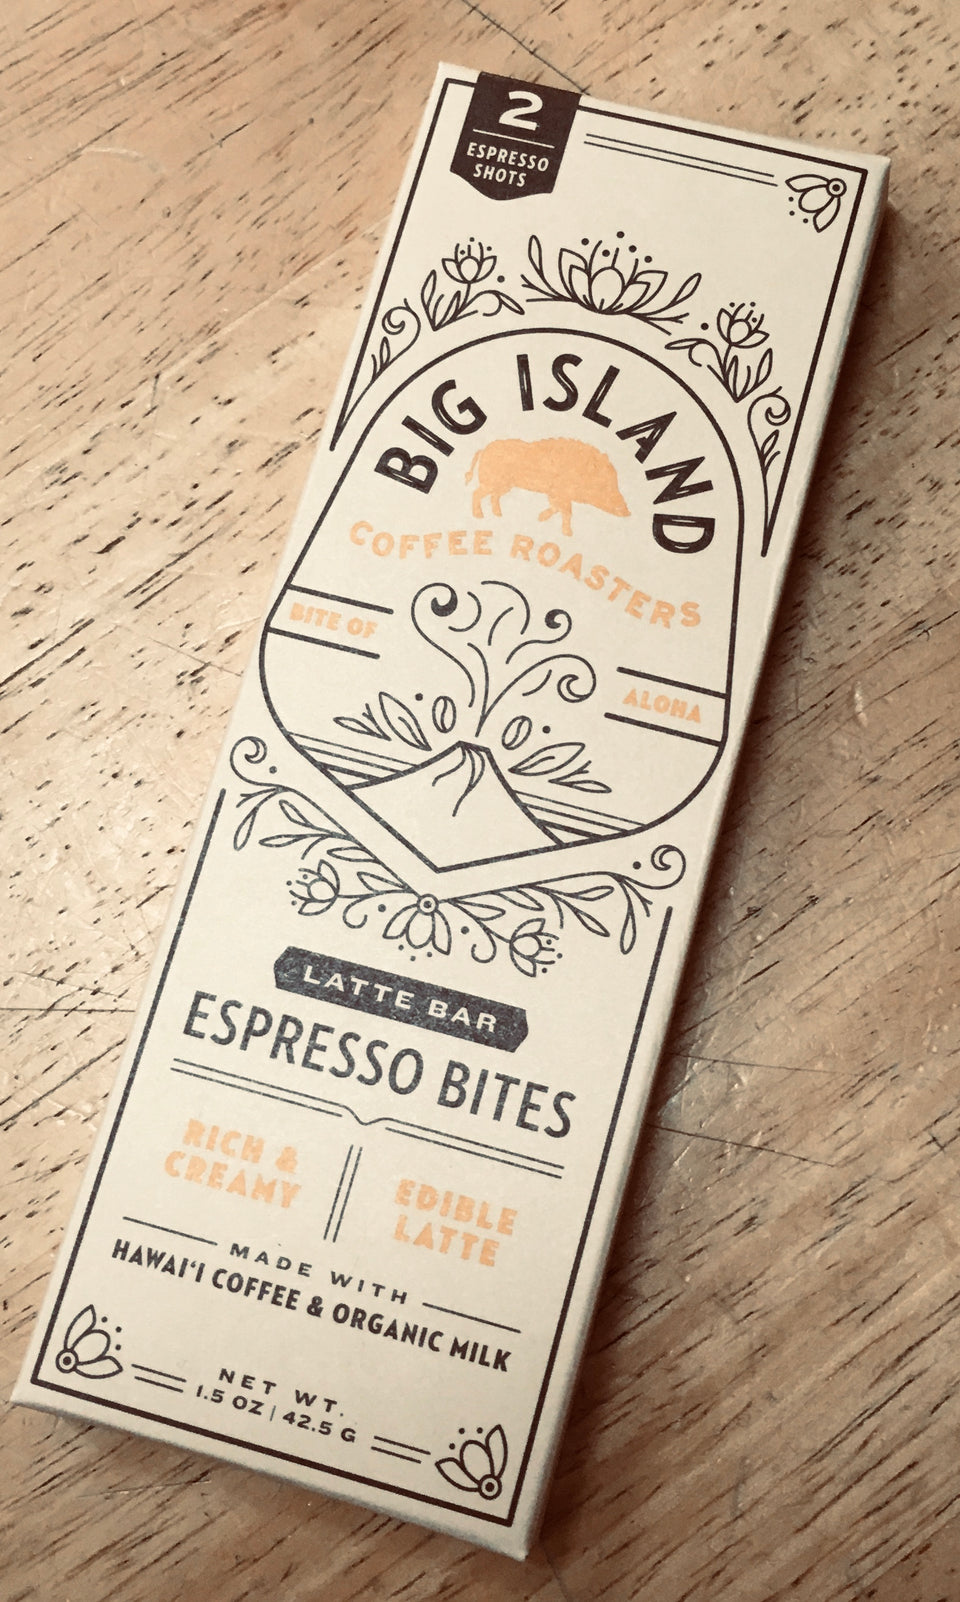 big island espresso bites bar in package 